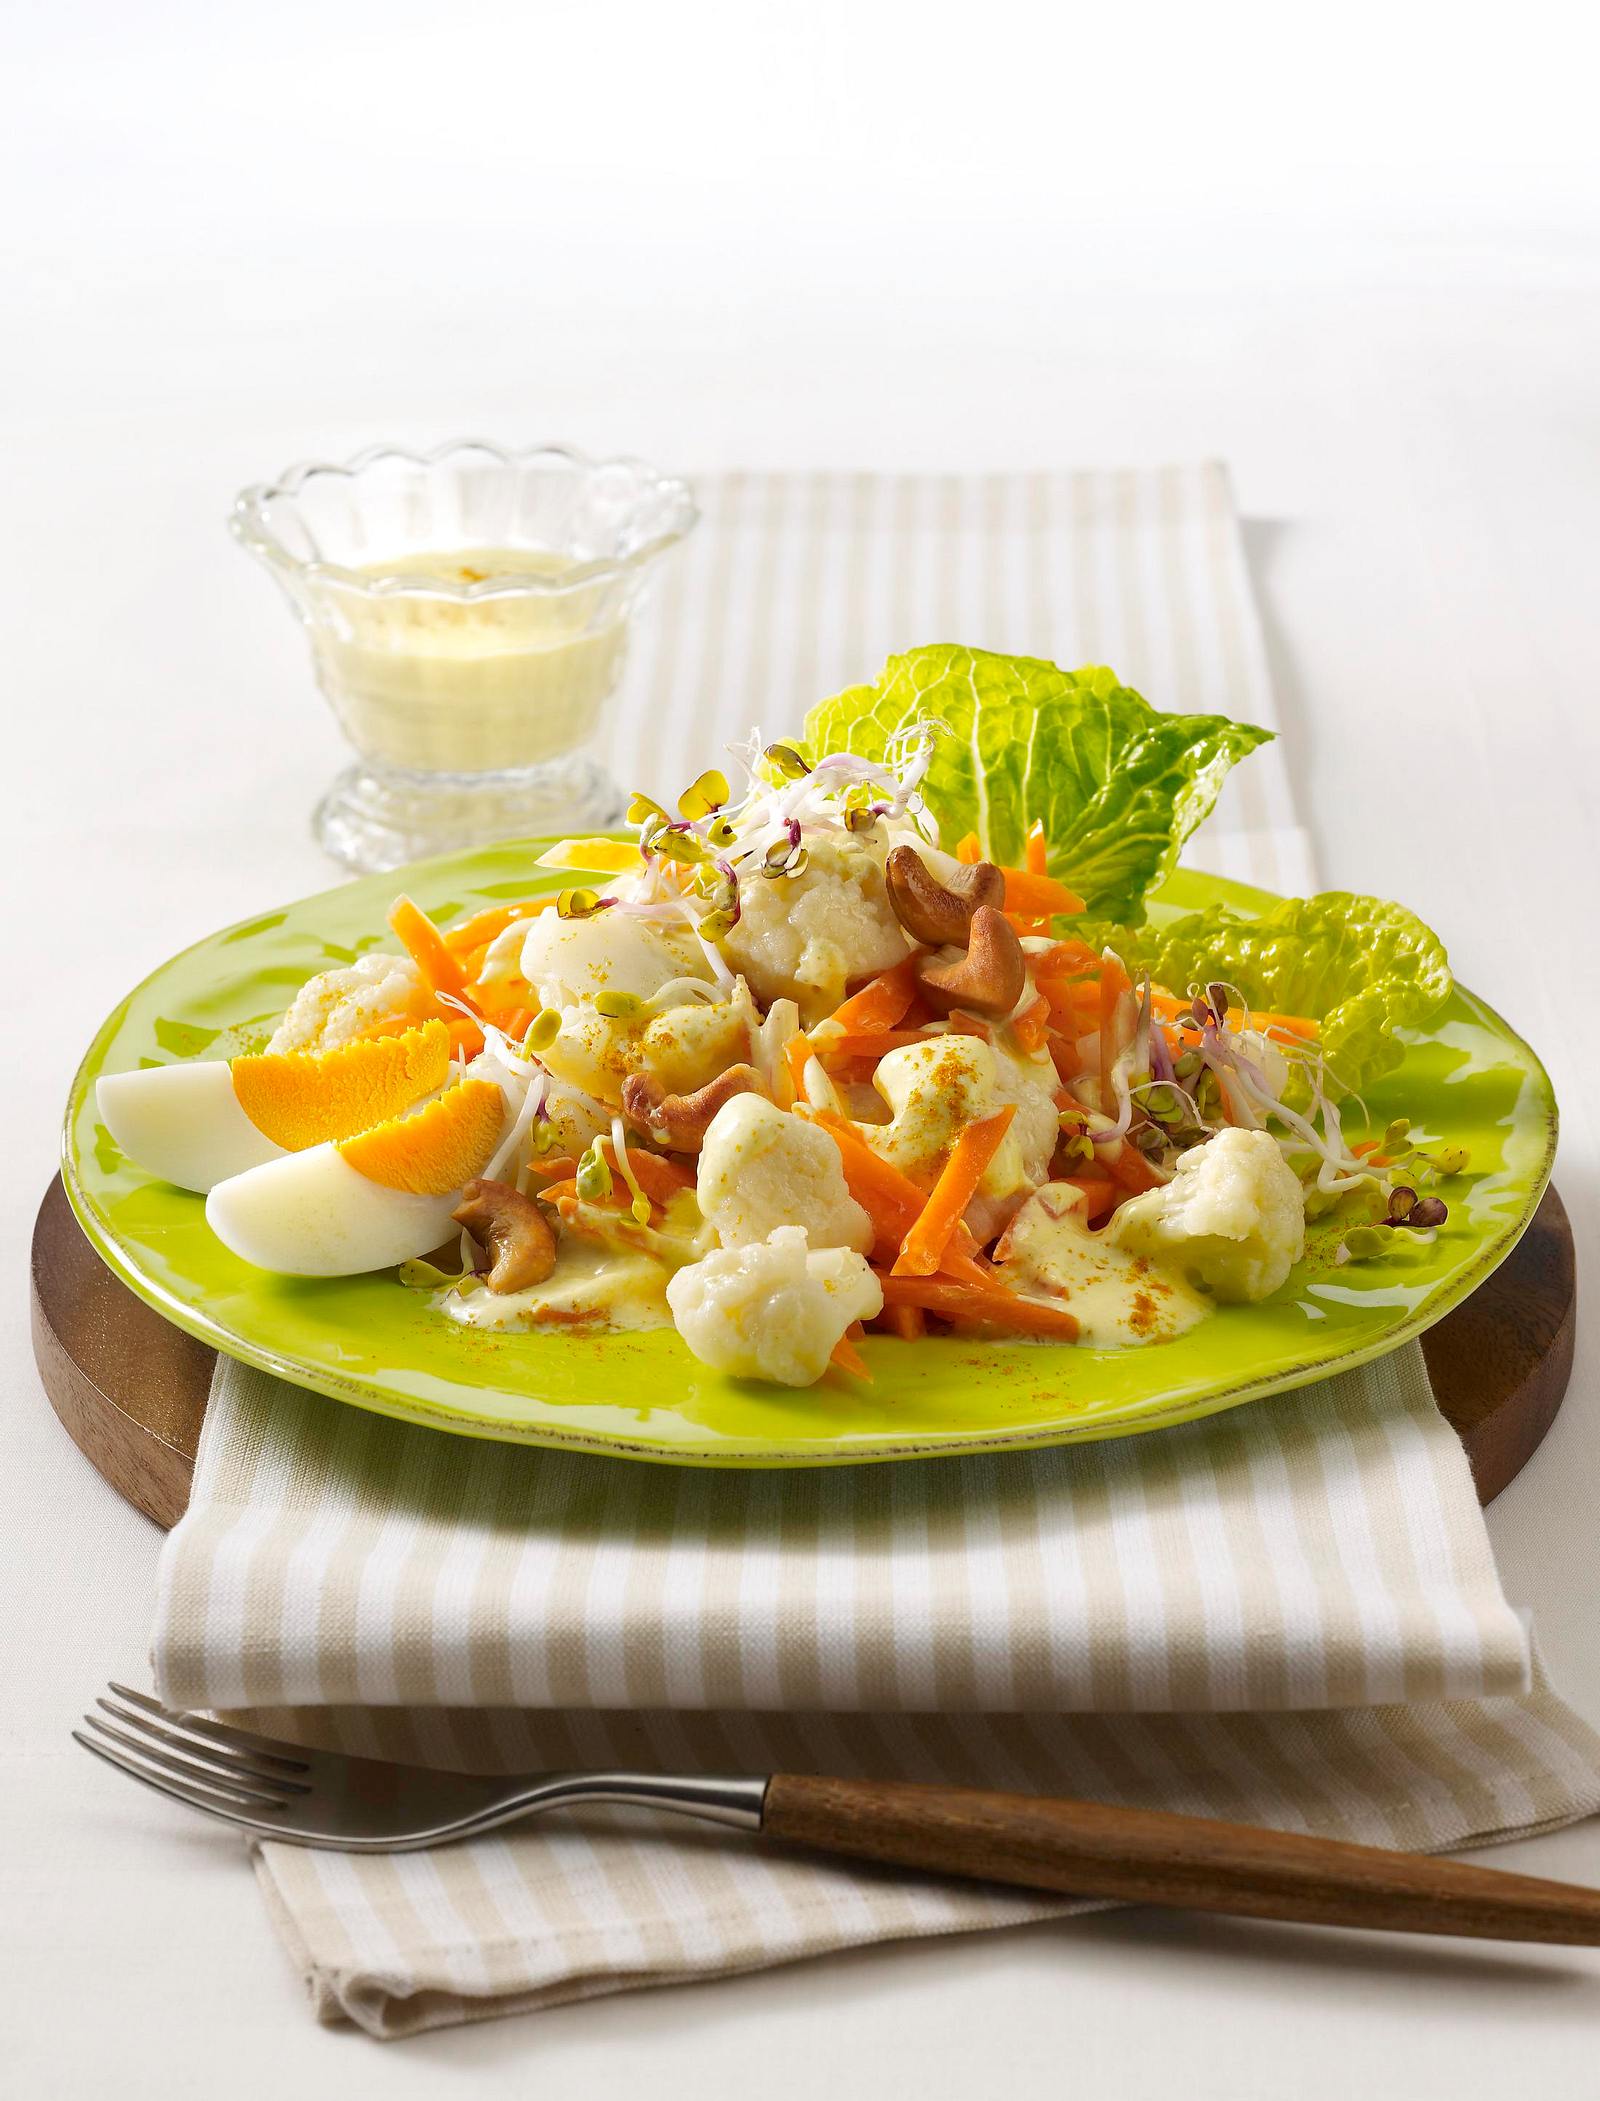 Blumenkohl-Möhren-Salat mit Curry-Joghurt-Dressing Rezept | LECKER